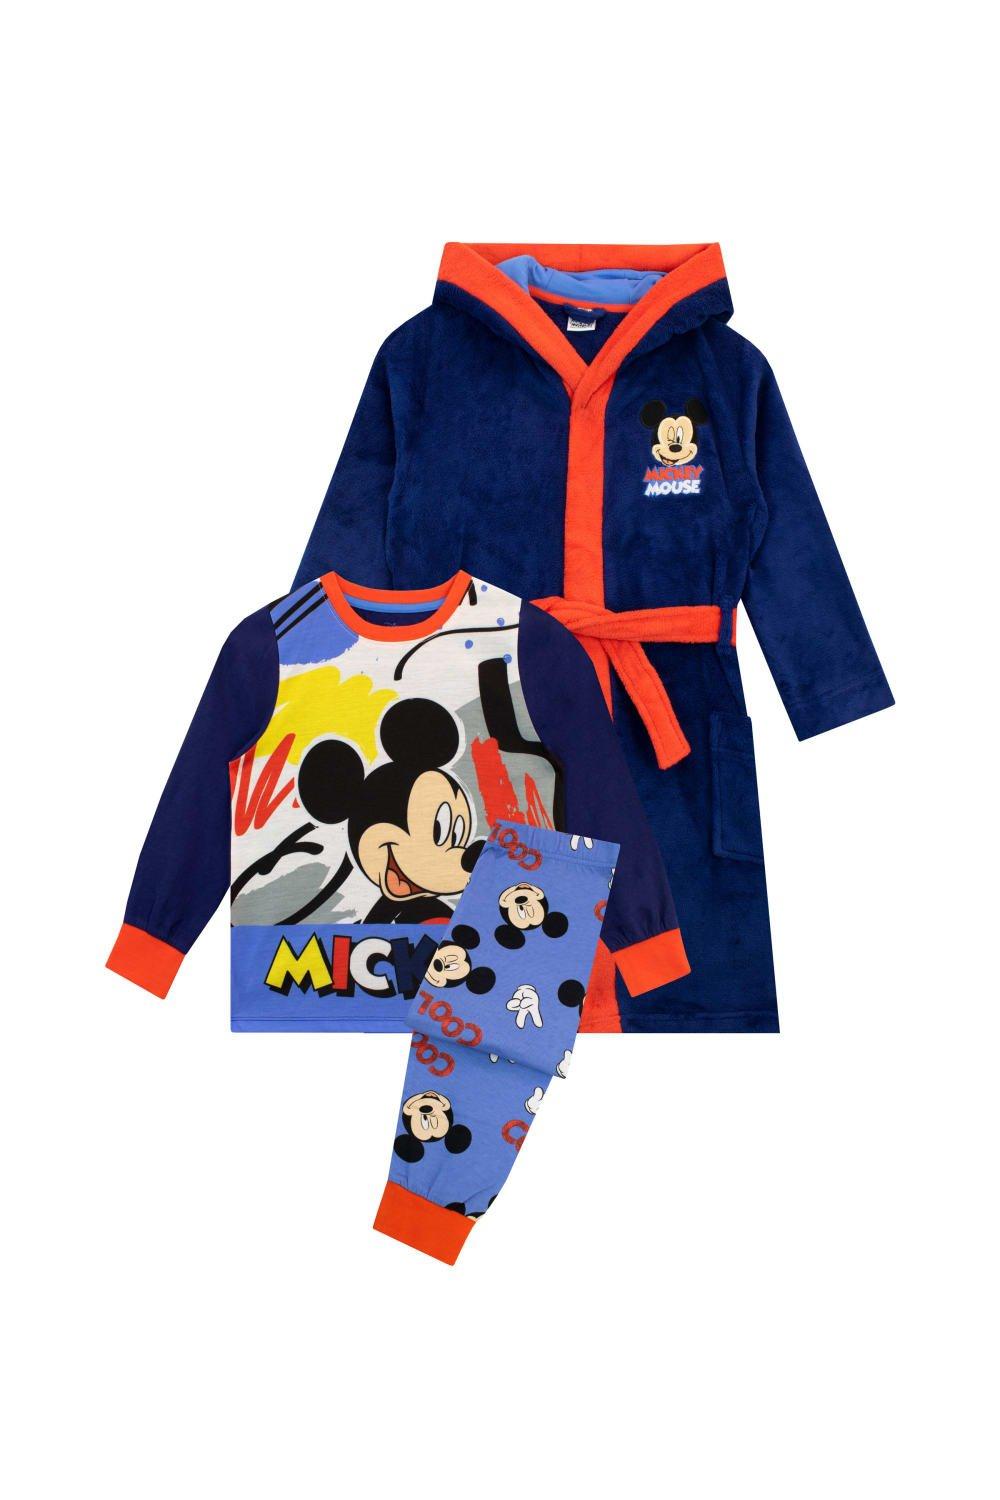 Комплект халата и пижамы с Микки Маусом Disney, синий мужская футболка с изображением микки мауса диснея множество микки licensed character